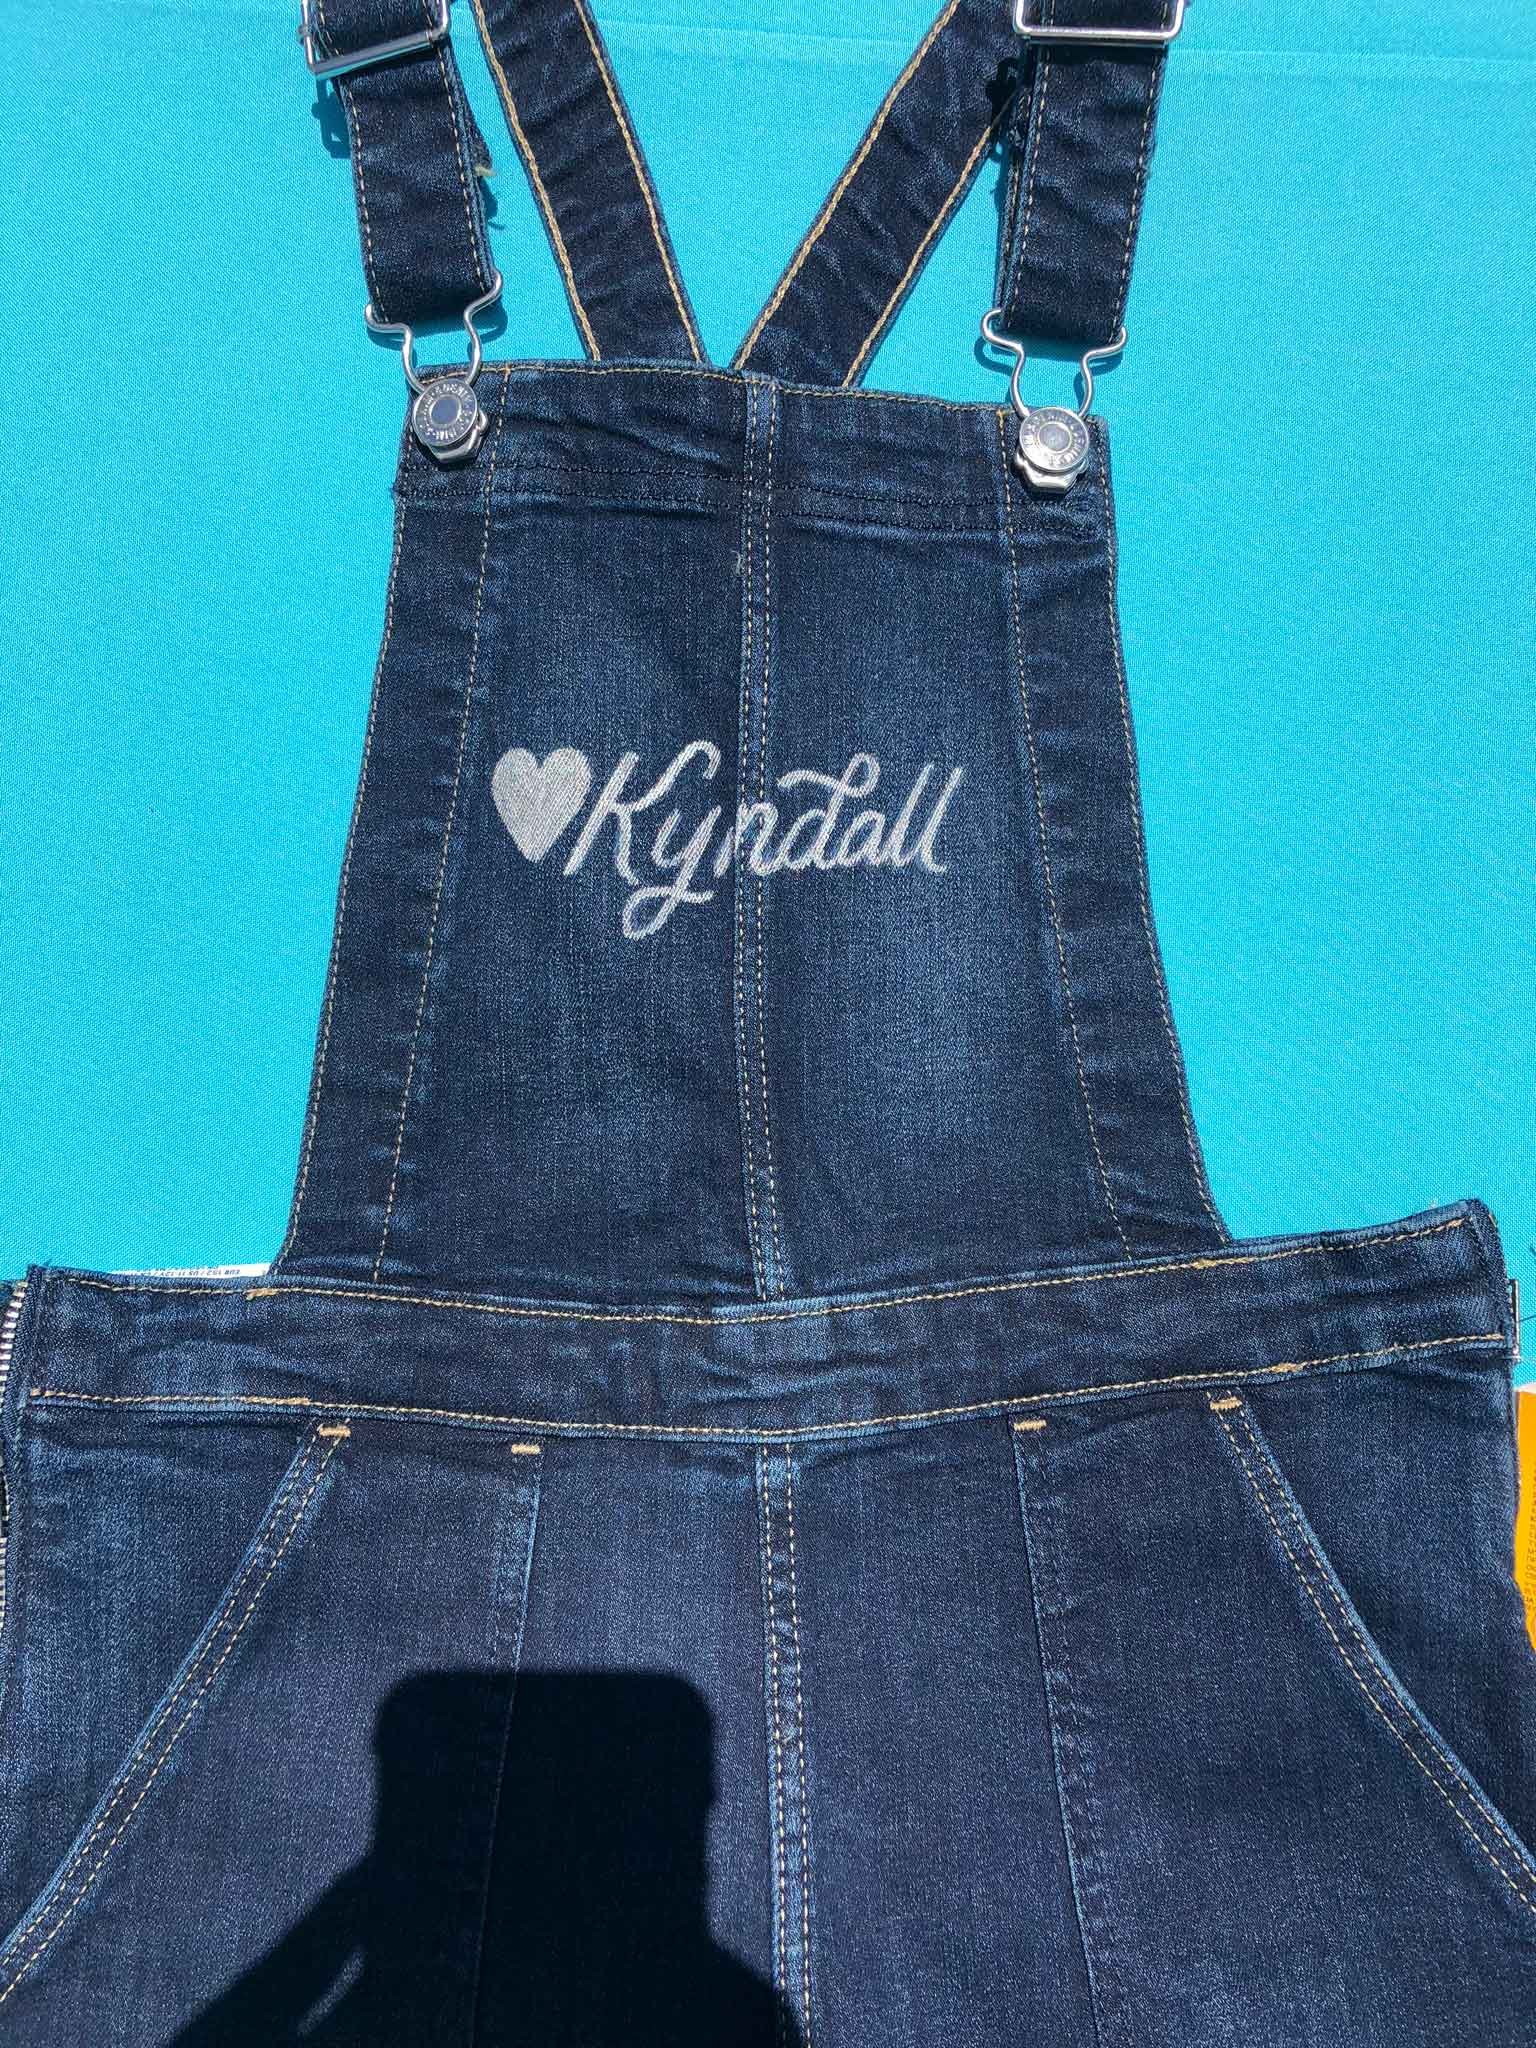 Kyndall overalls custom lettering.jpg